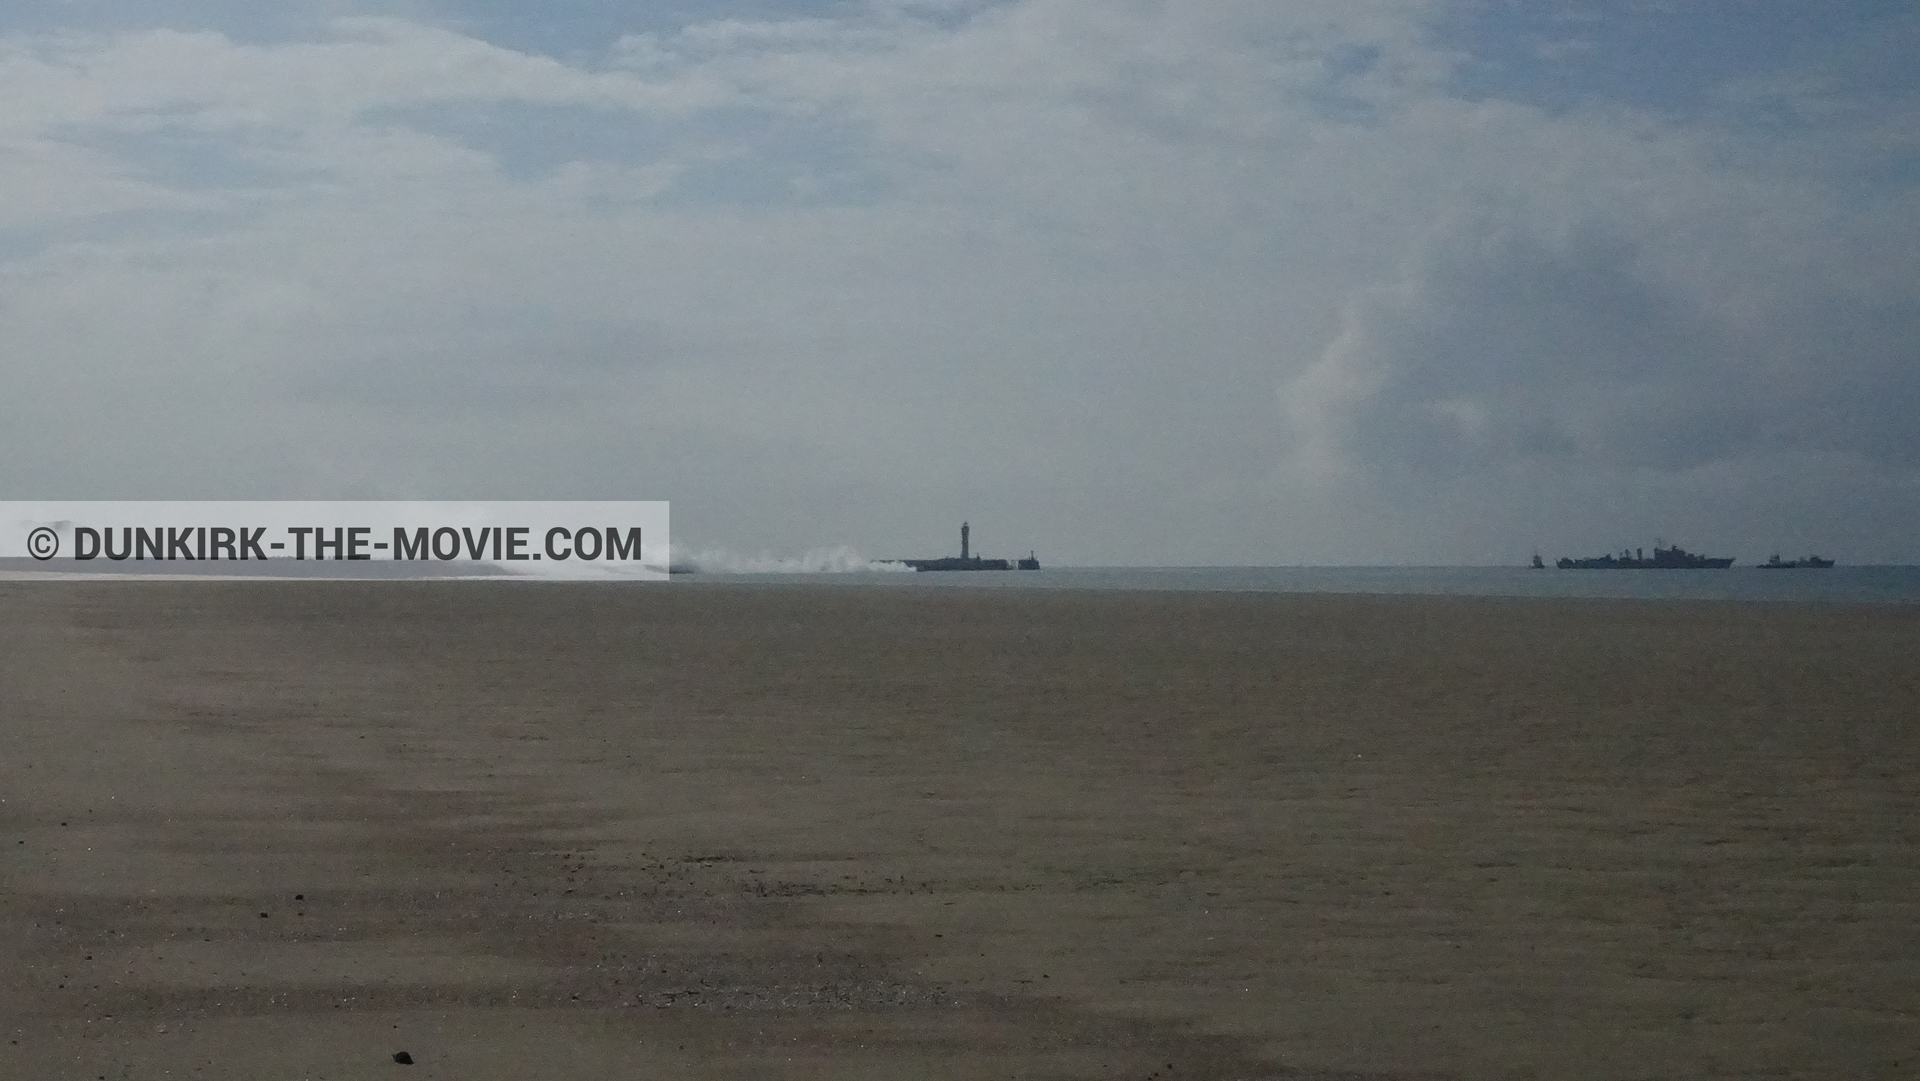 Fotos con cielo nublado, humo blanco, playa,  durante el rodaje de la película Dunkerque de Nolan